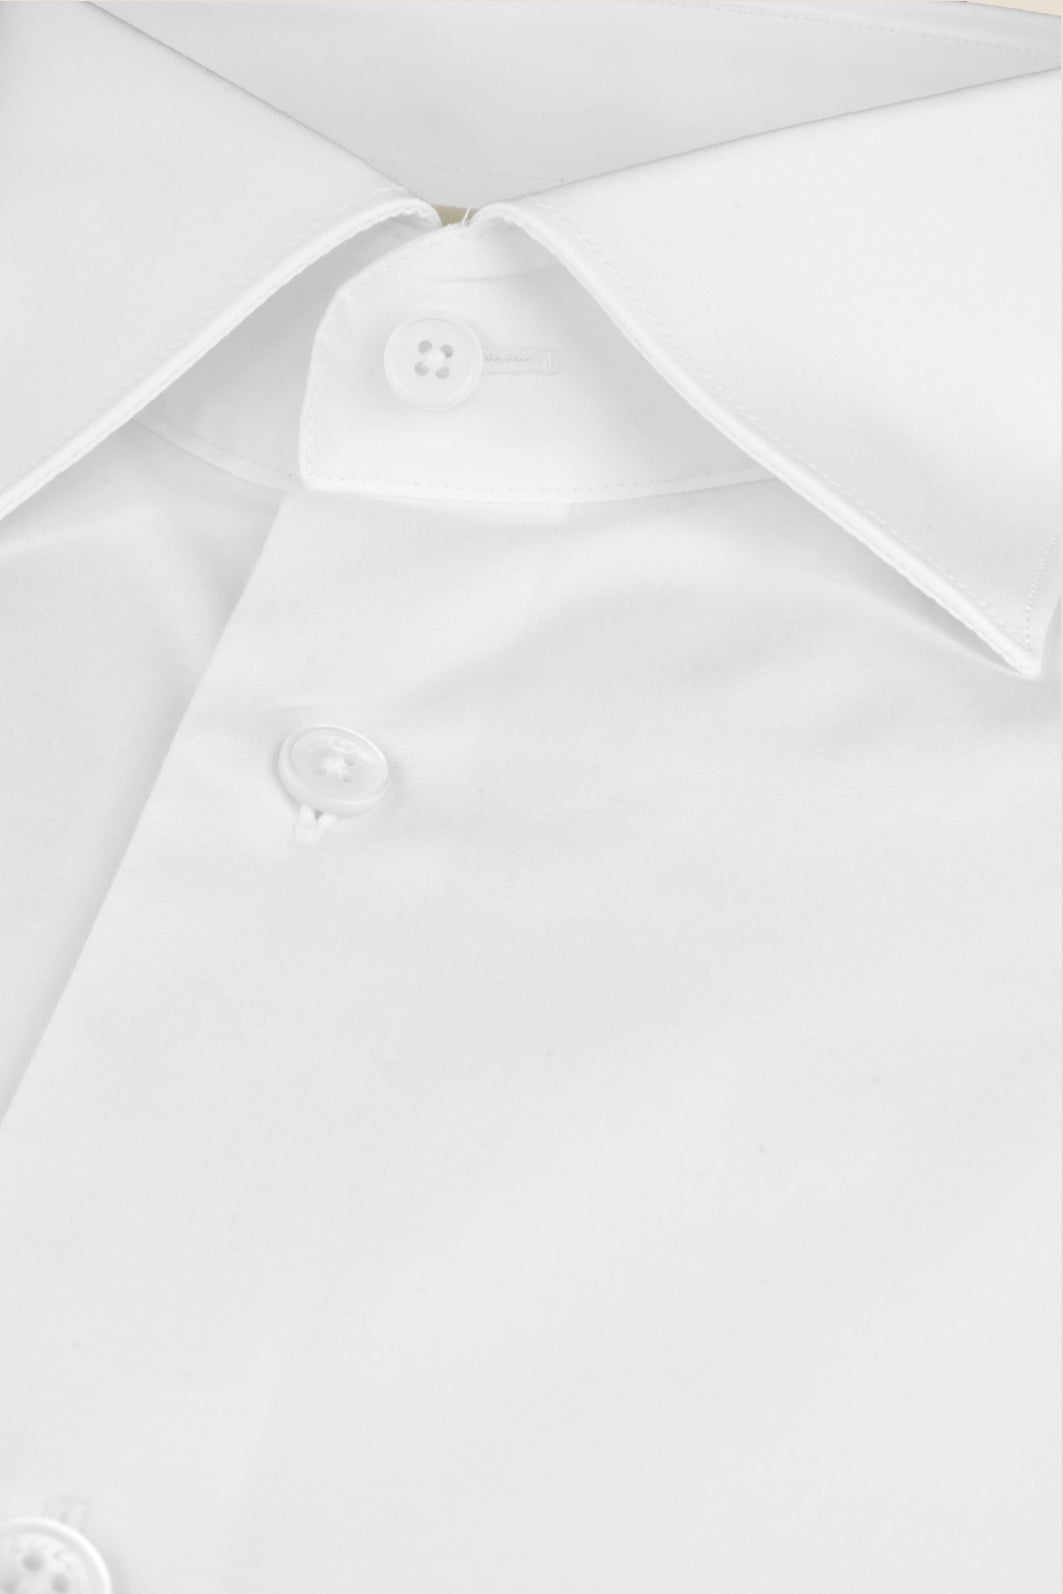 Weisses Hemd aus Bio - Baumwolle mit klassischem Haifischkragen, lässigem Schnitt und 2% Elastan - Made to order